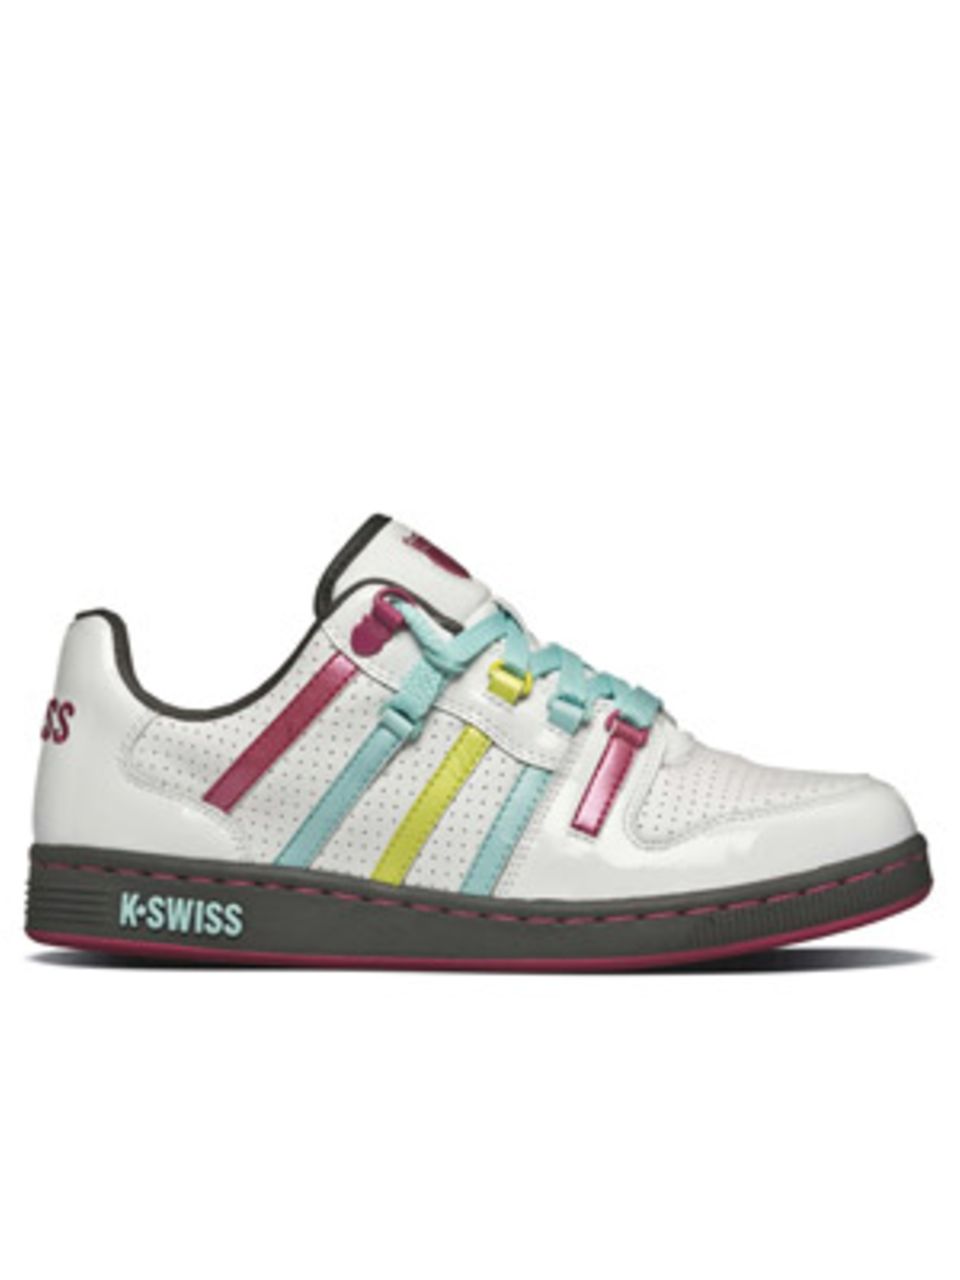 Weißer Schuh mit Schnürsenkeln in Bonbonfarben von K SWISS, um 90 Euro.